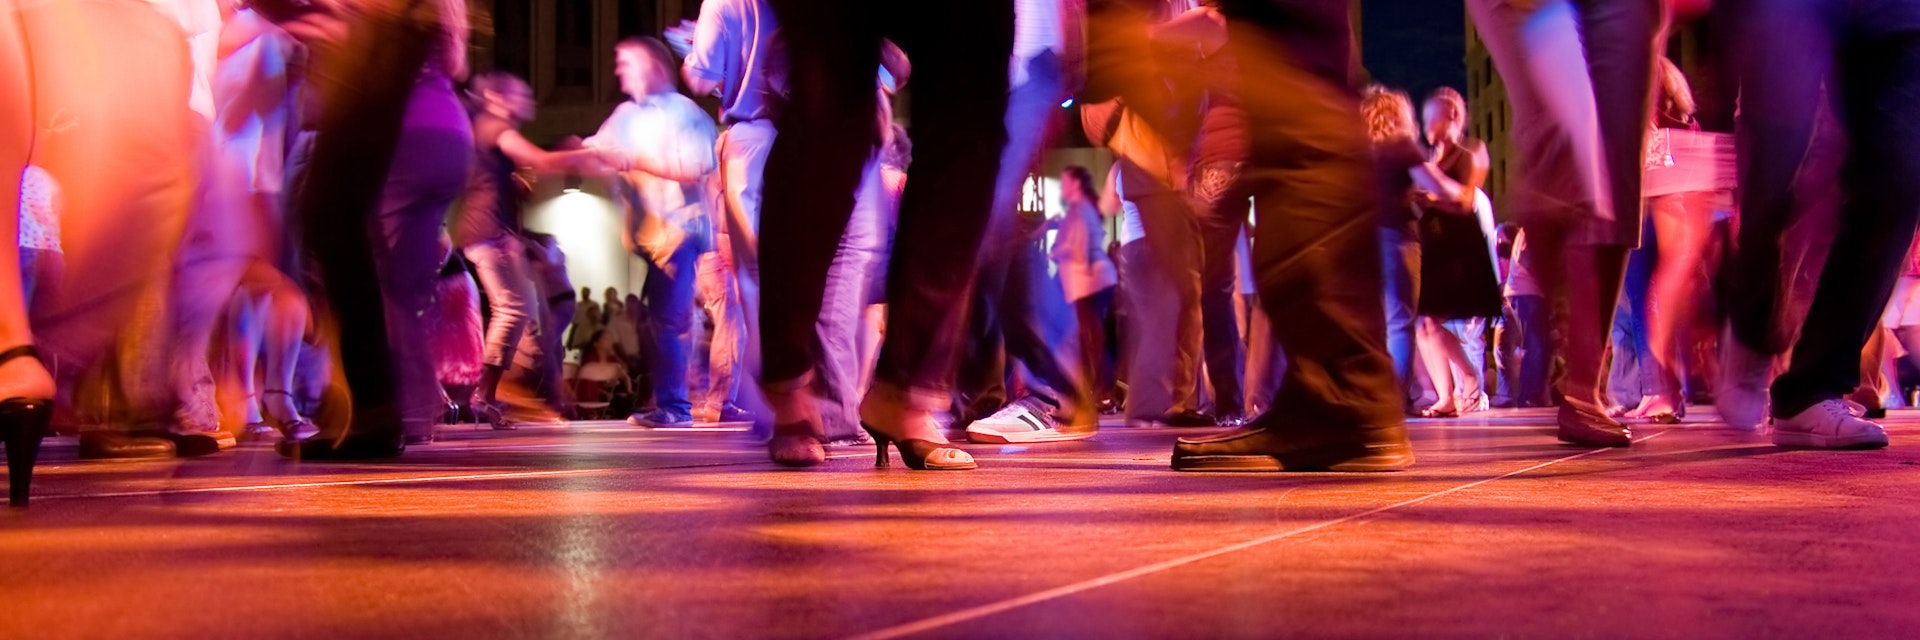 Dance Floor Movement